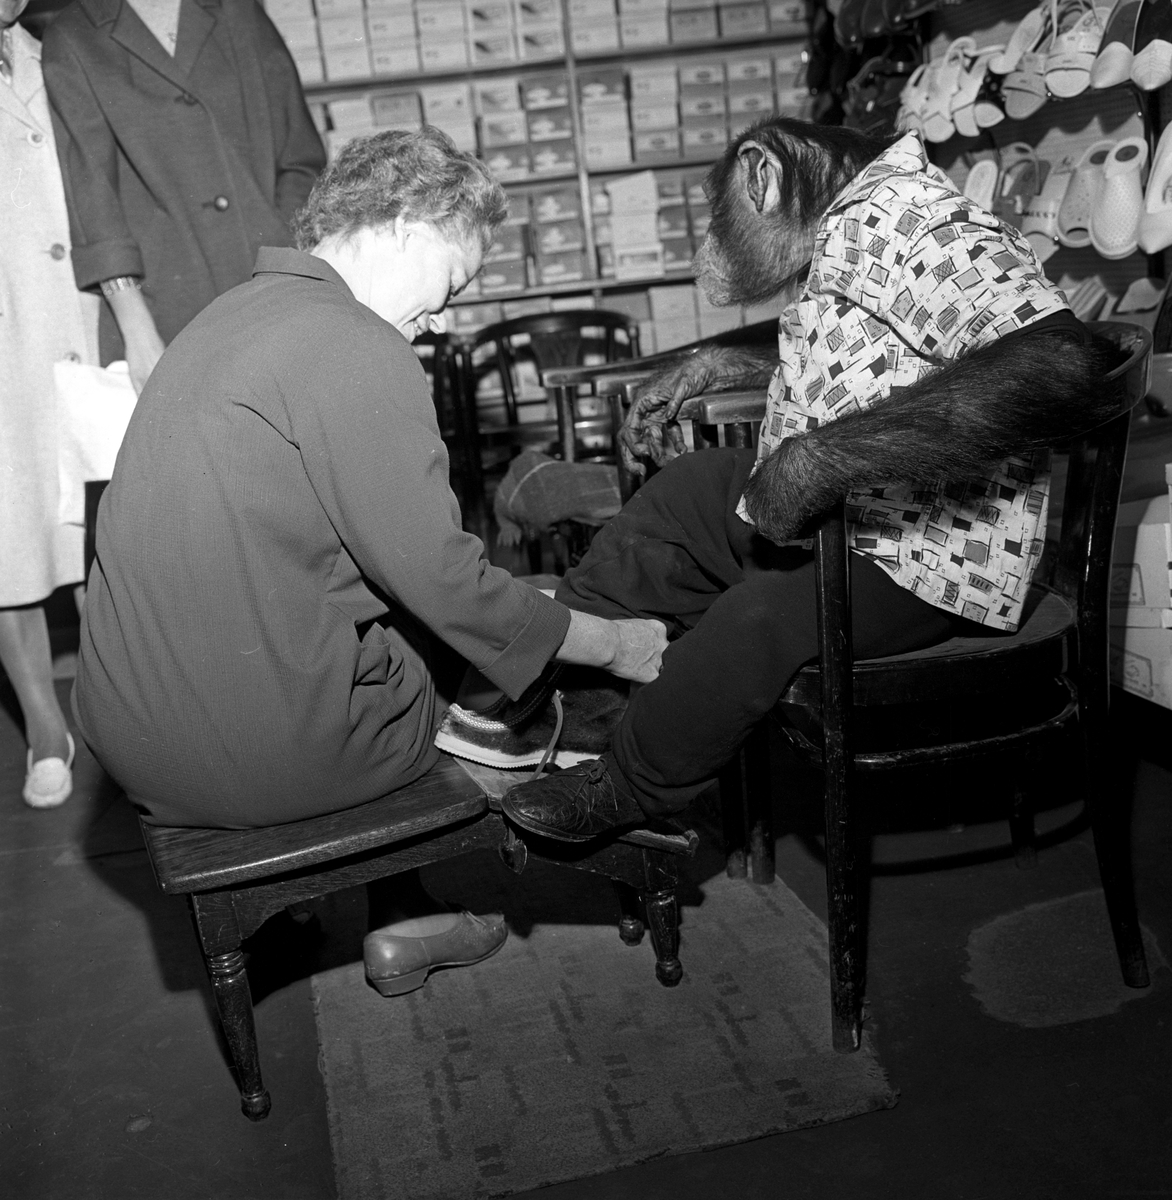 Apekatt på besøk i skobutikk.
Fotografert 1965.